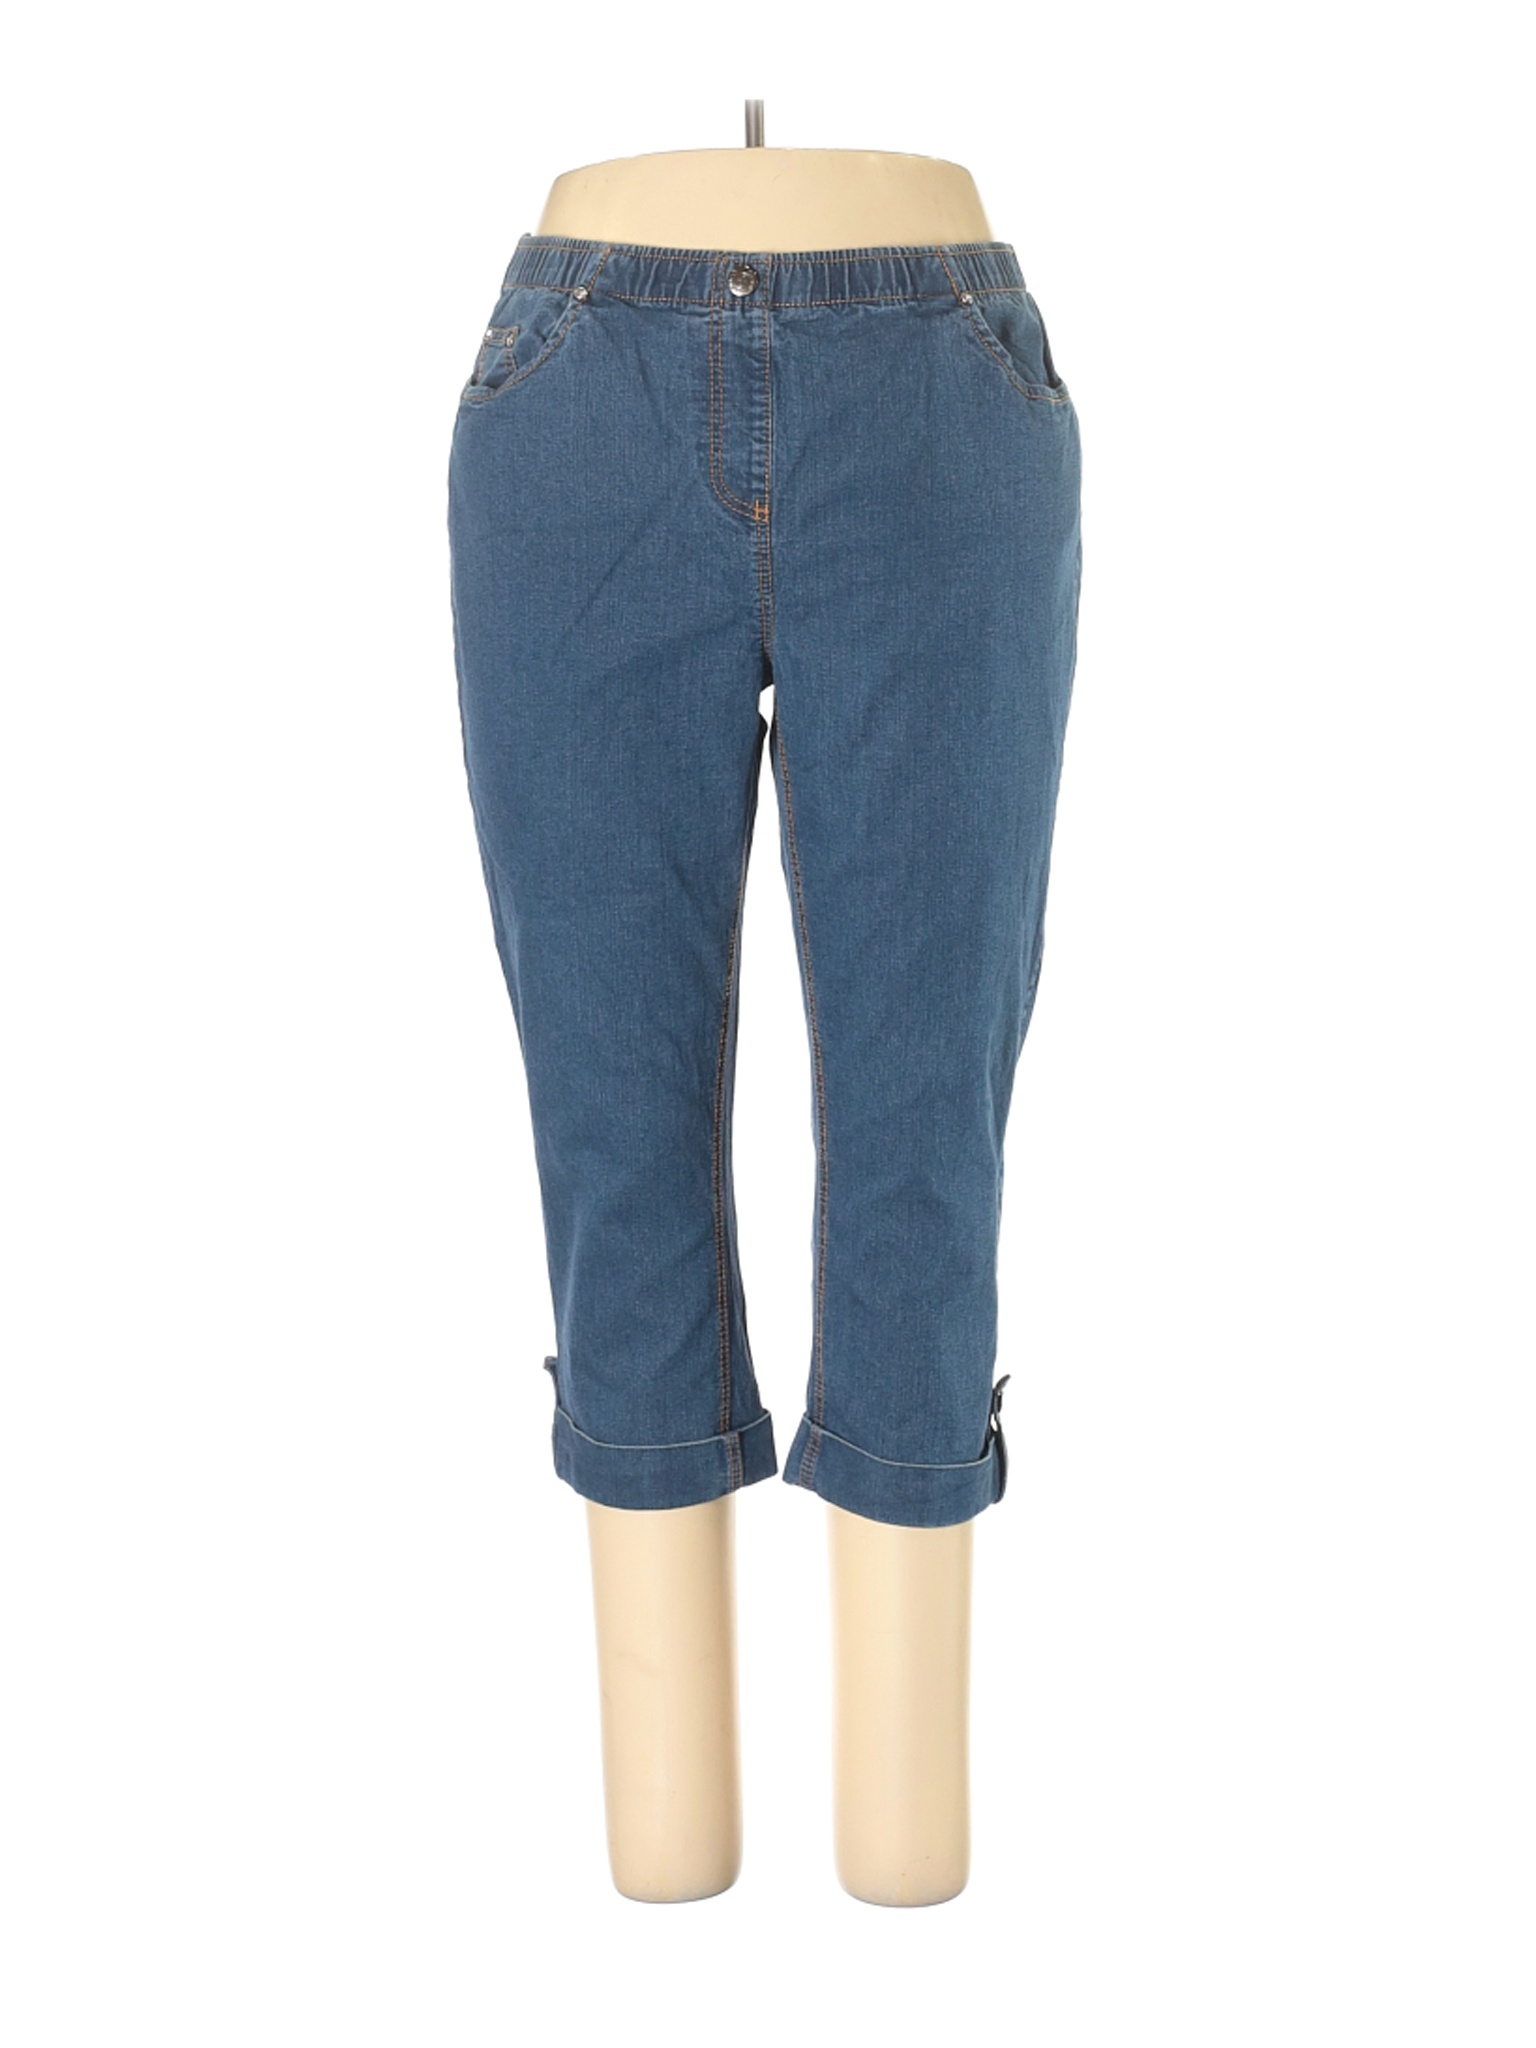 Cathy Daniels Women Blue Jeans L | eBay